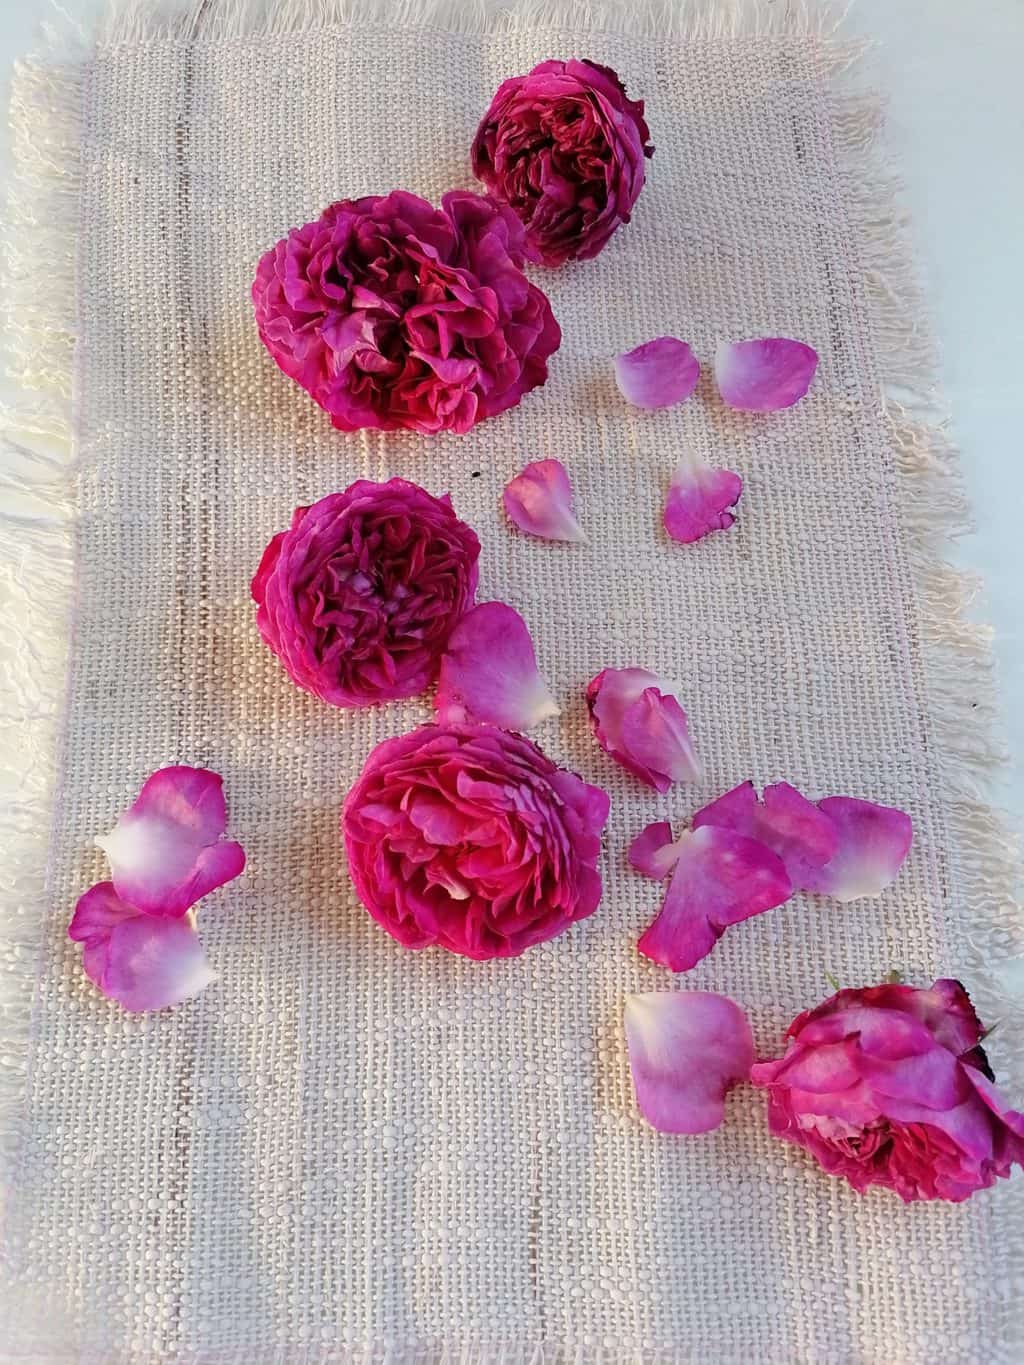 Roses for Rose petal jam recipe